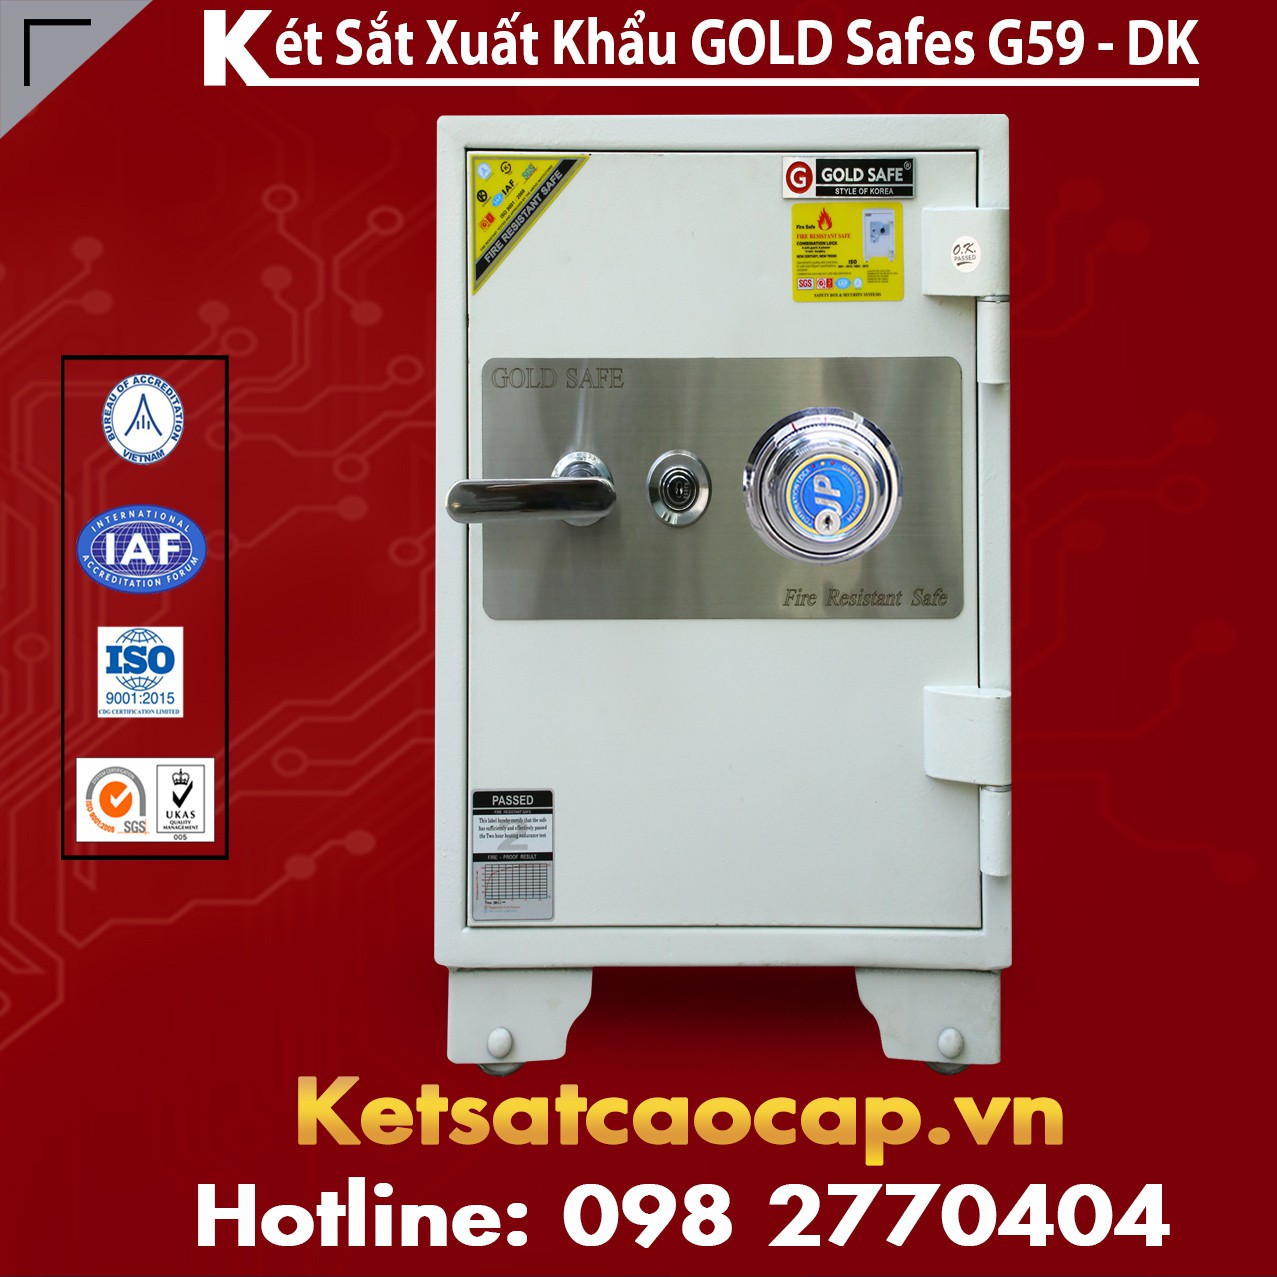 Két Sắt Phú Quý GOLD SAFES G590 DK